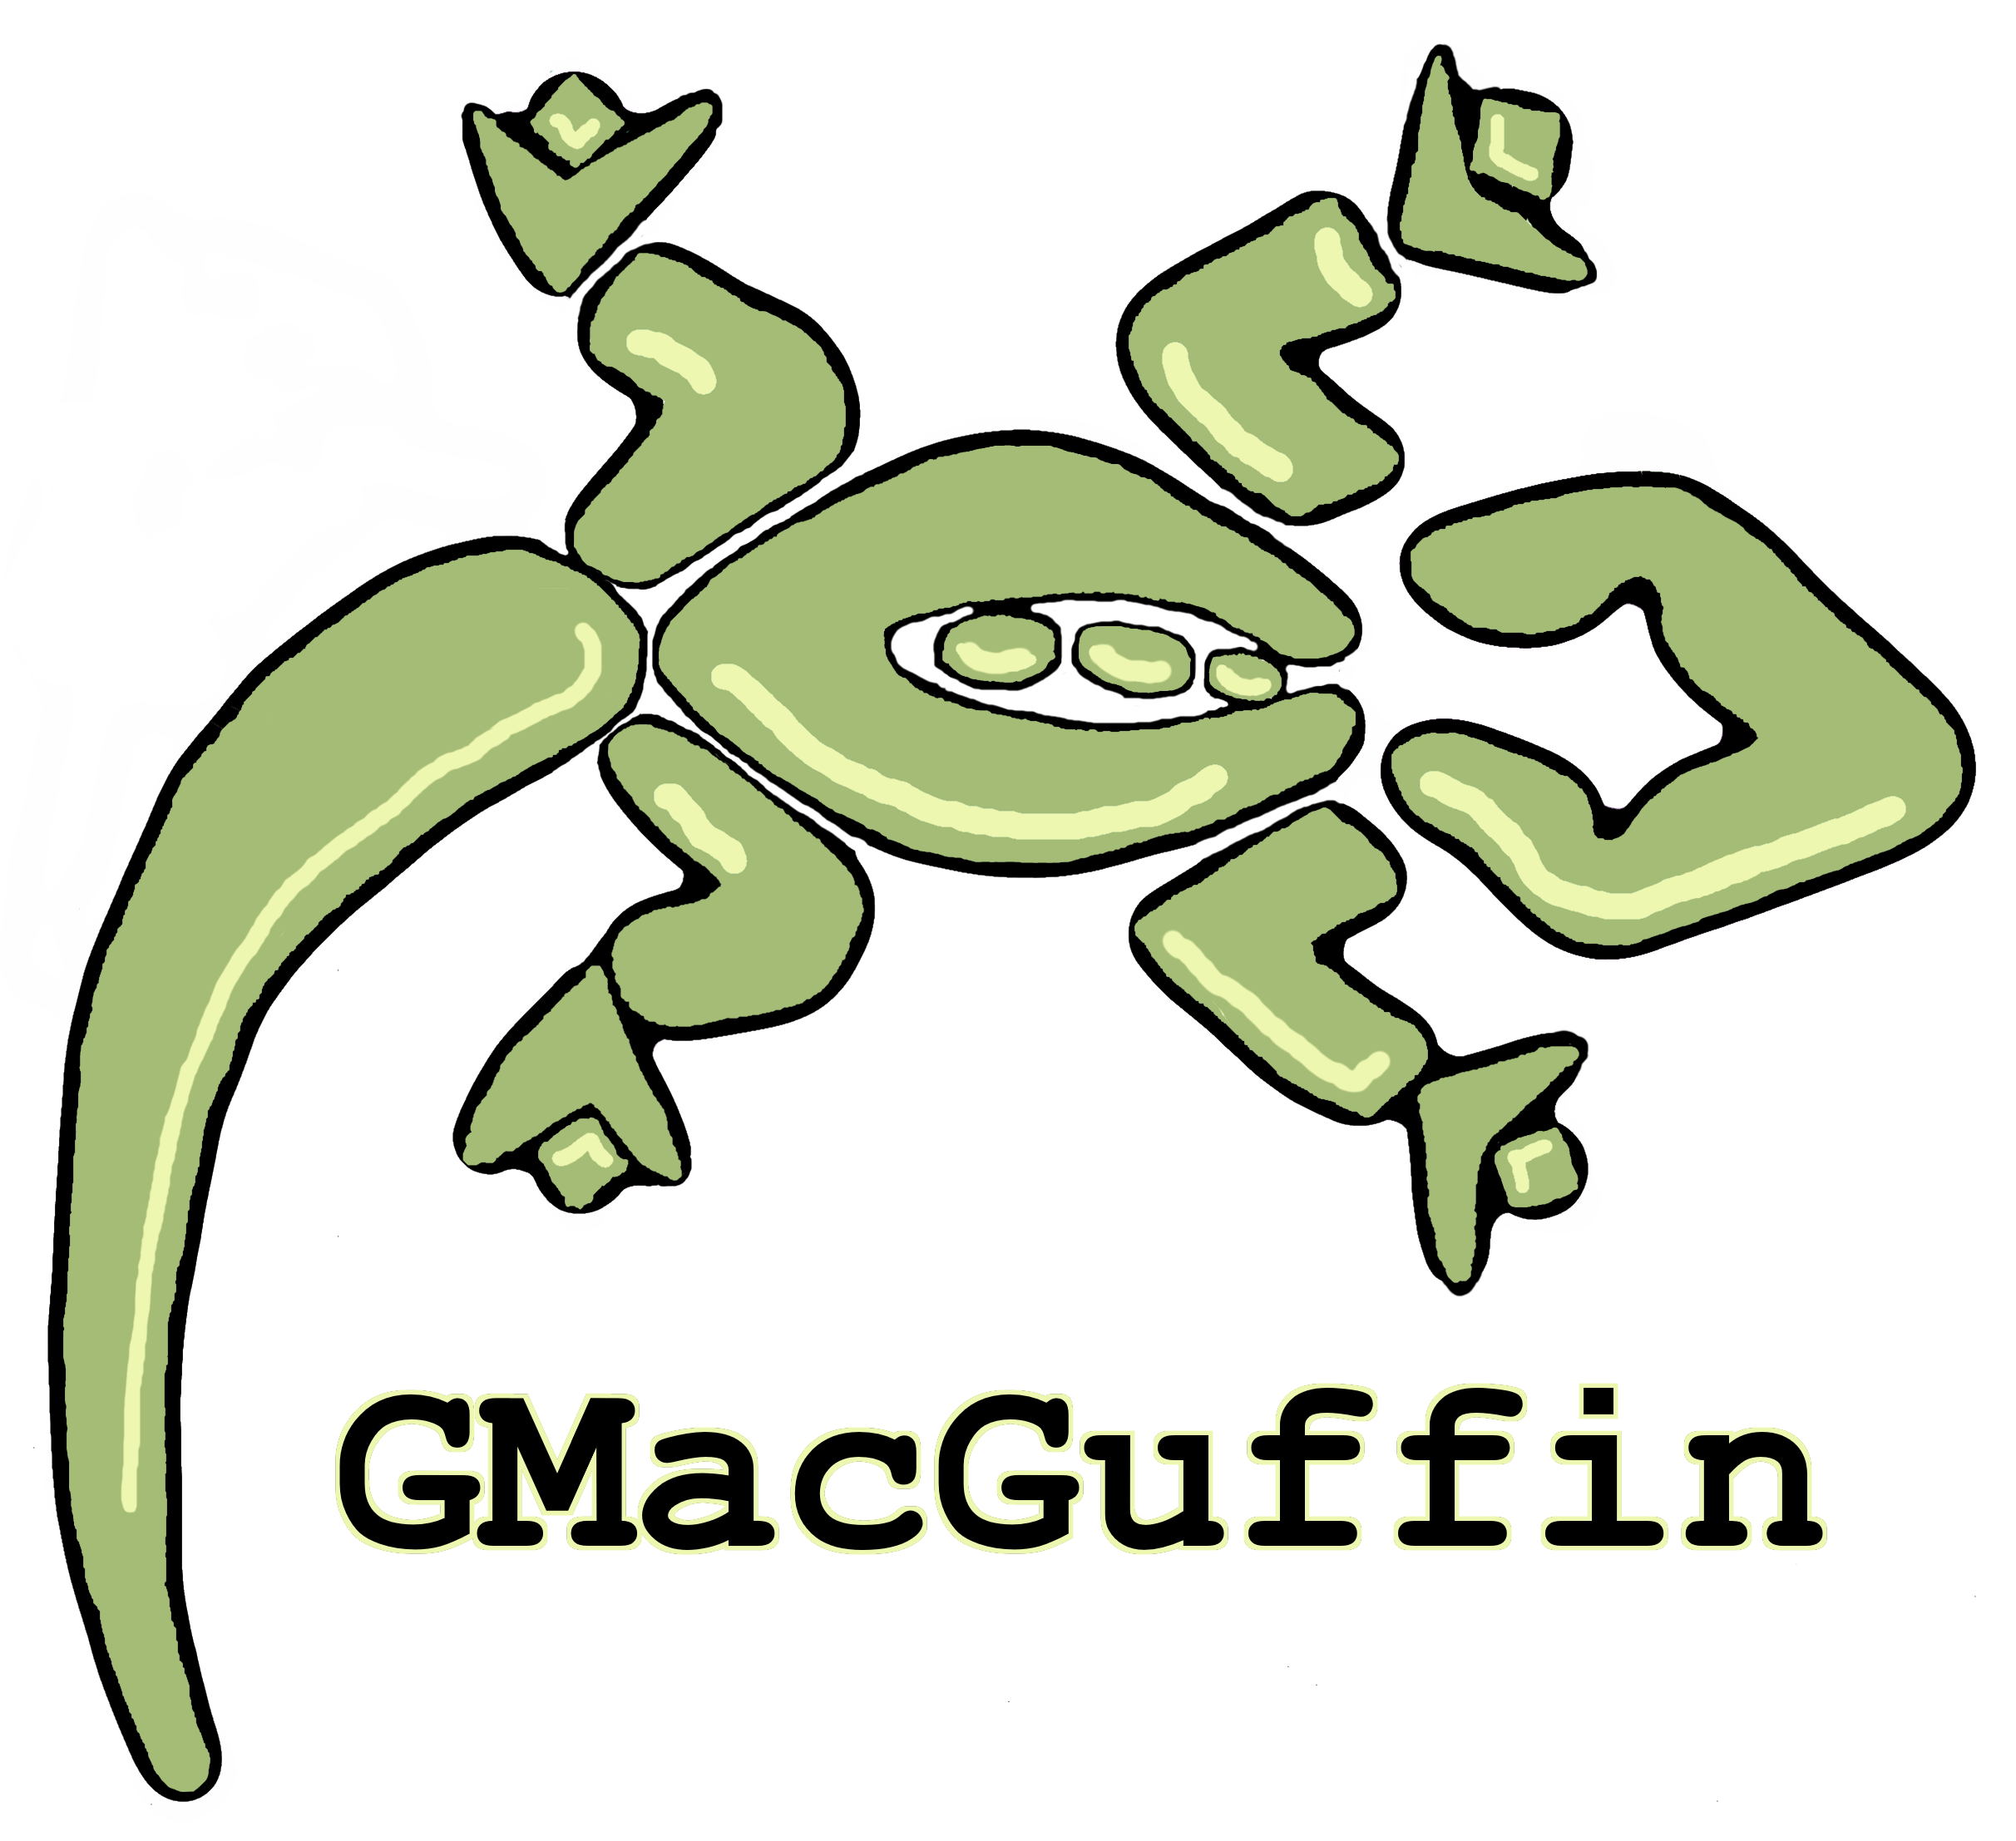 GMacGuffin Lizard Logo